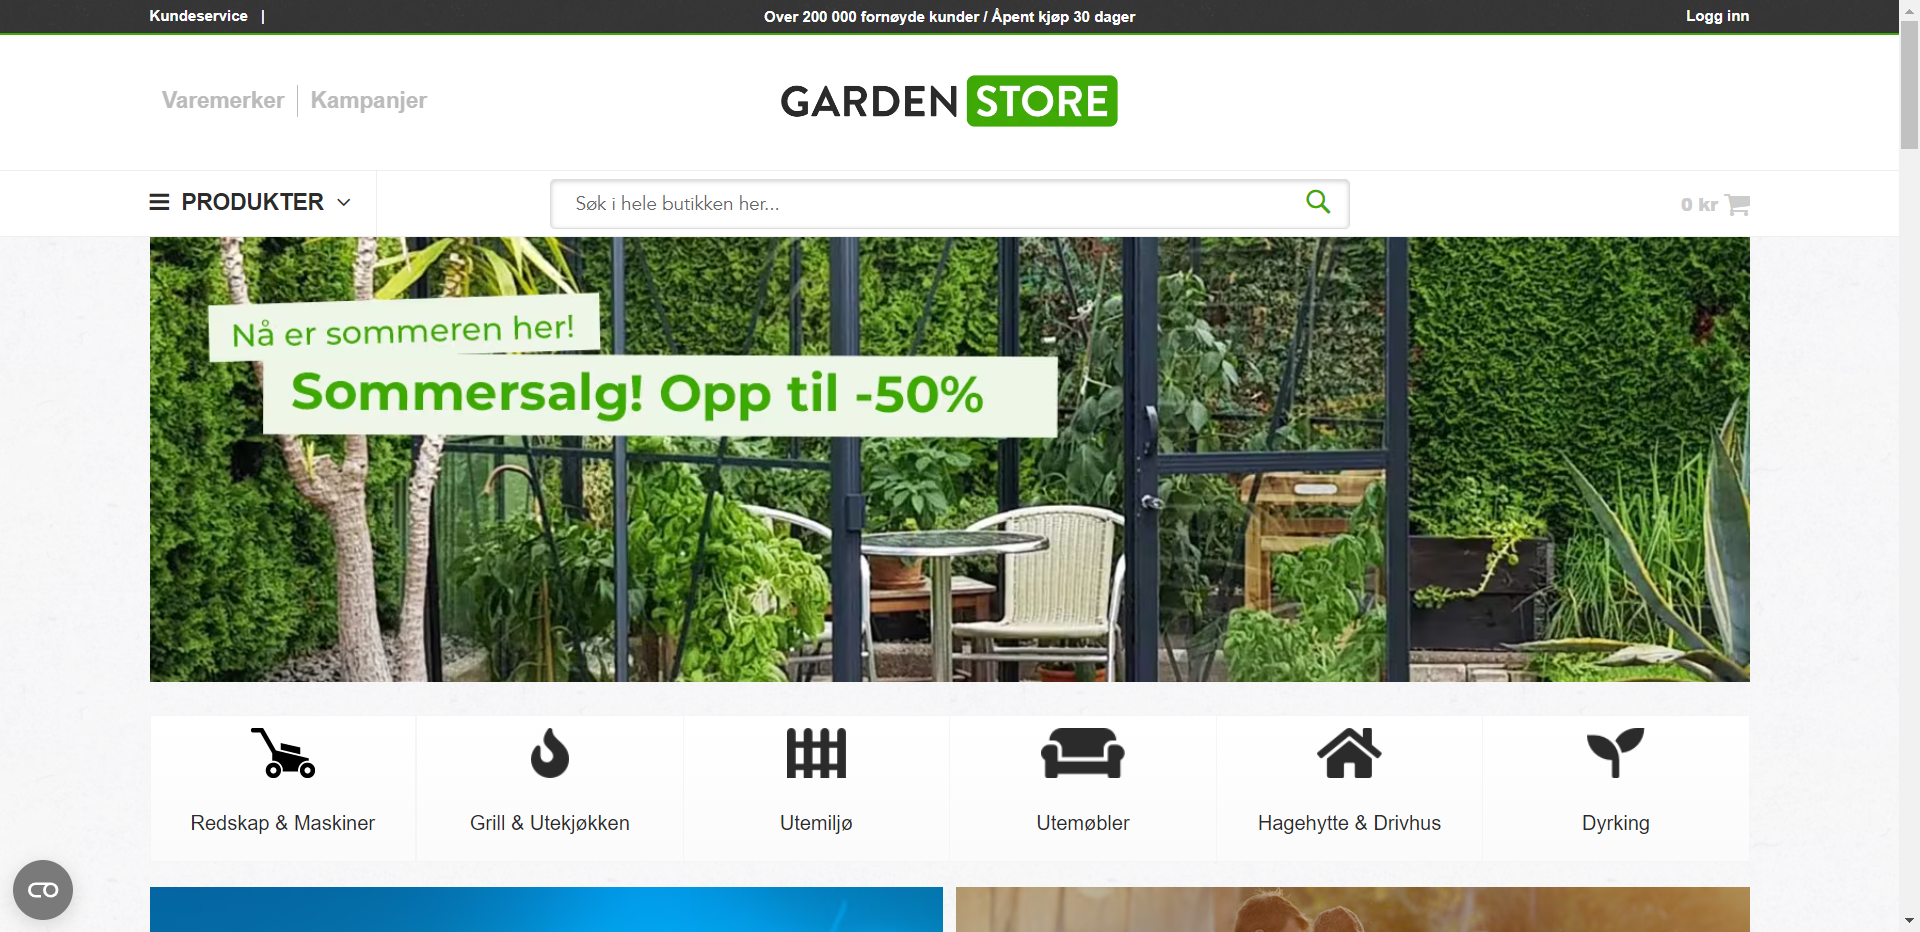 Gardenstore.no nettbutikk - Les omtalen av nettbutikken